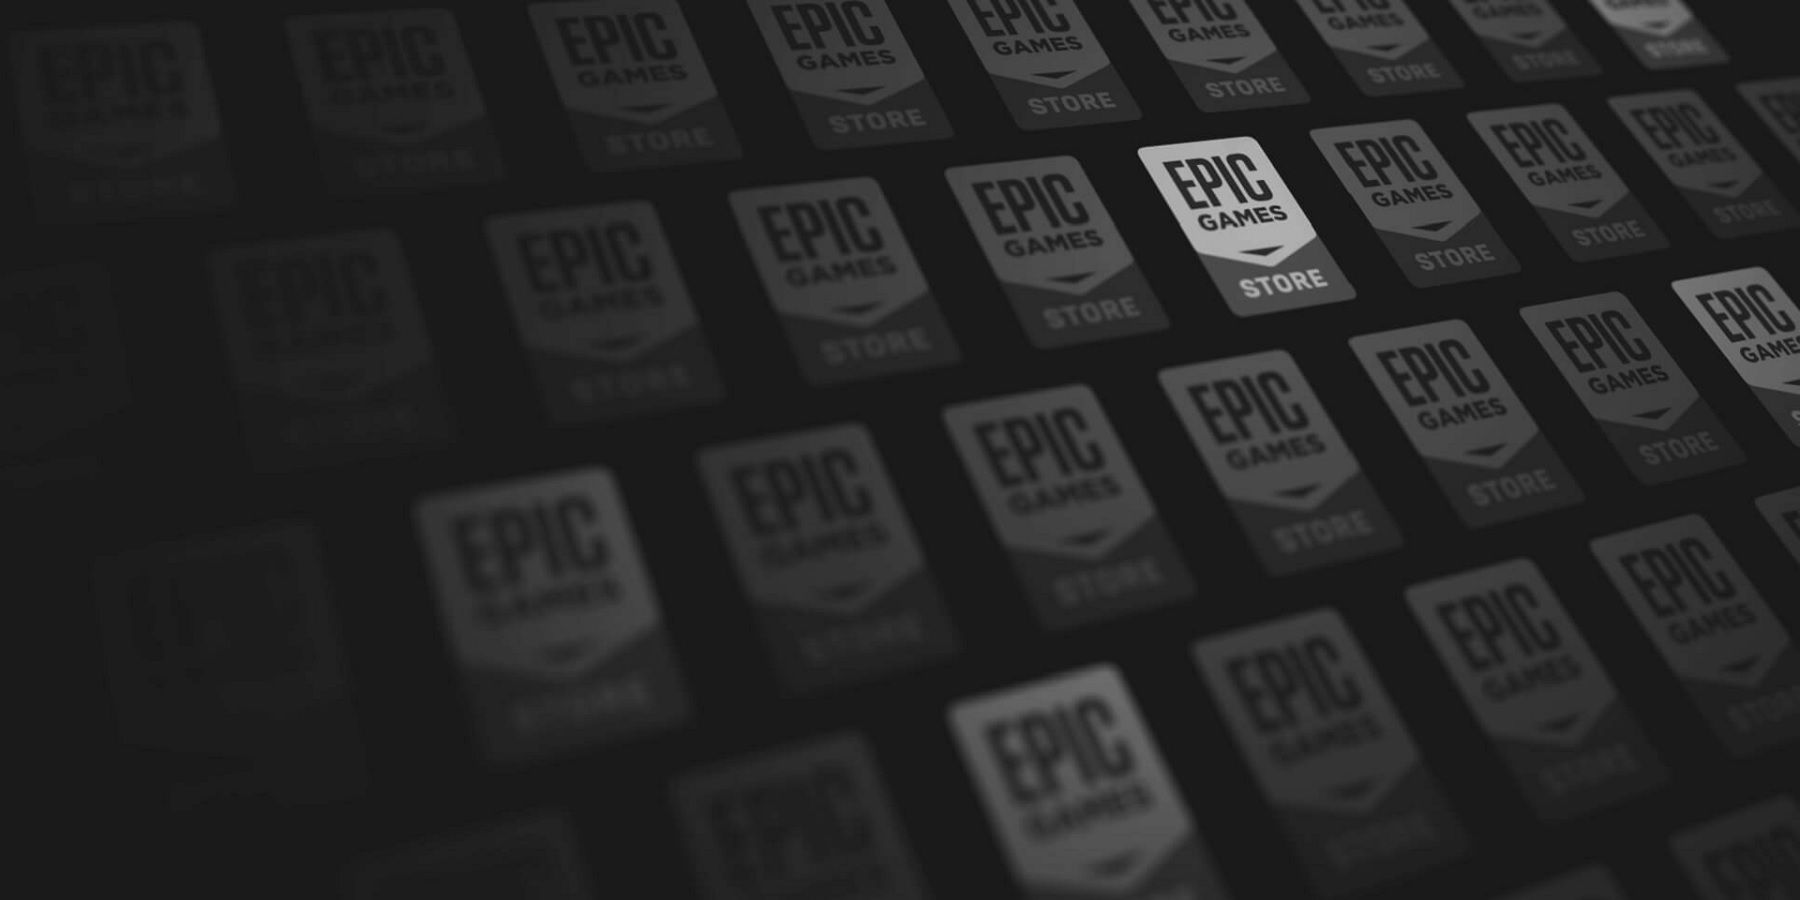 epic games store logos